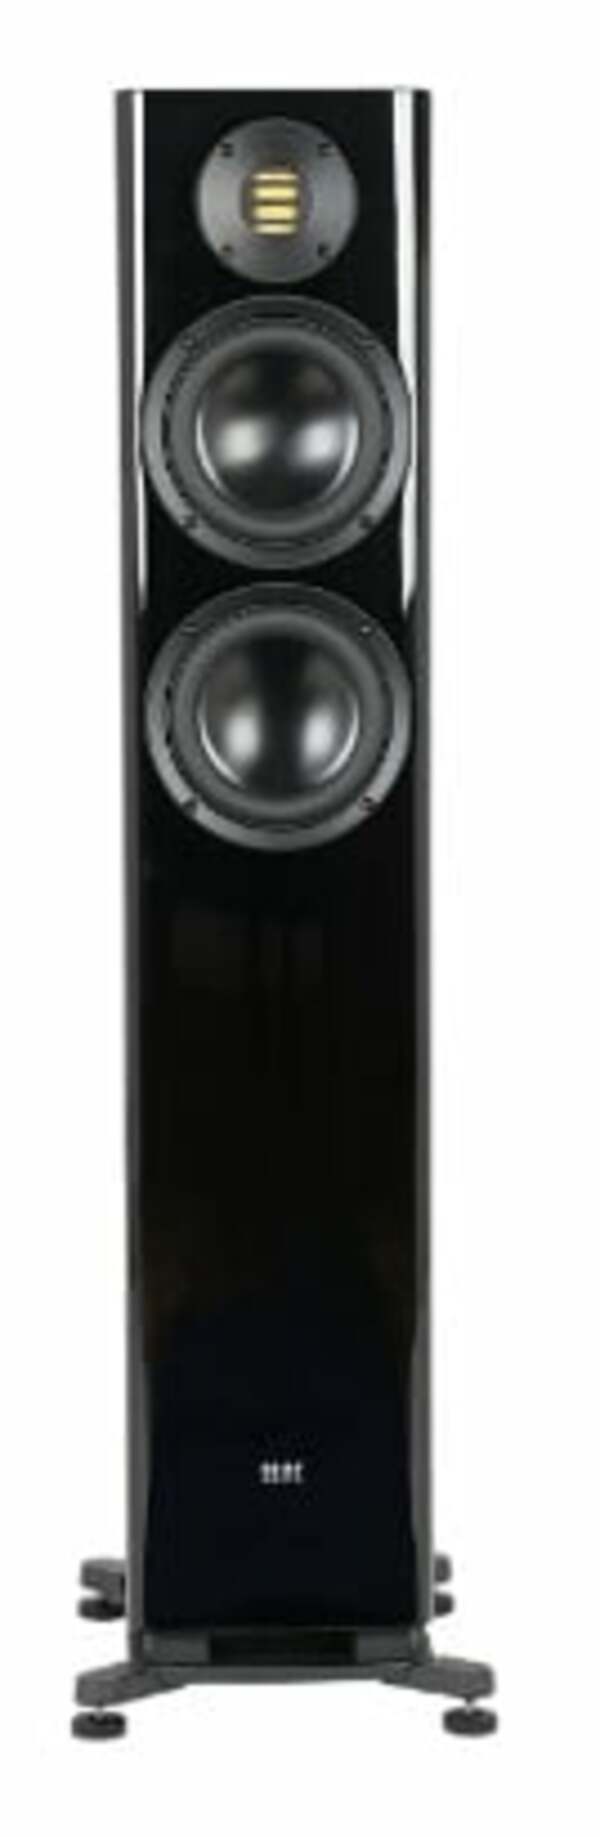 Bild 1 von Solano FS287 schwarz hochglanz Lautsprecher